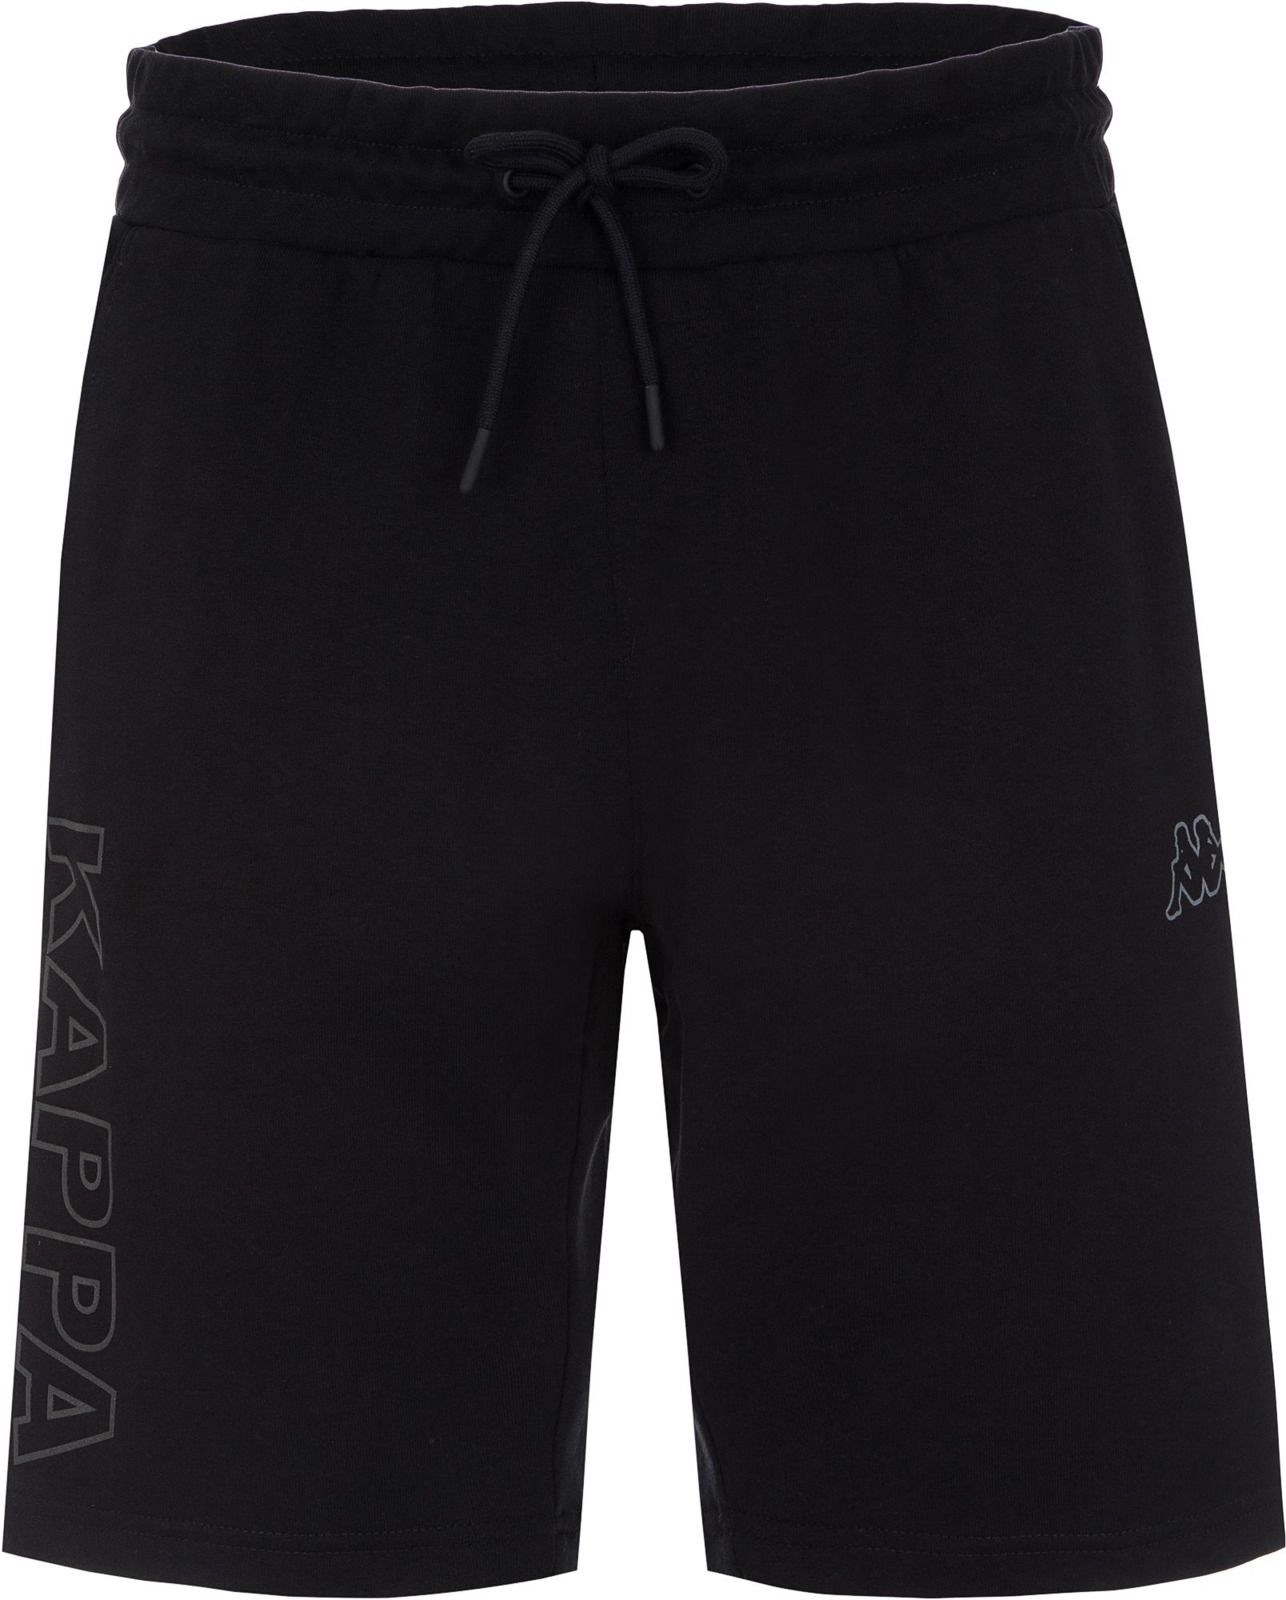   Kappa Men's Shorts, : . 304IDQ0-99.  M (48)